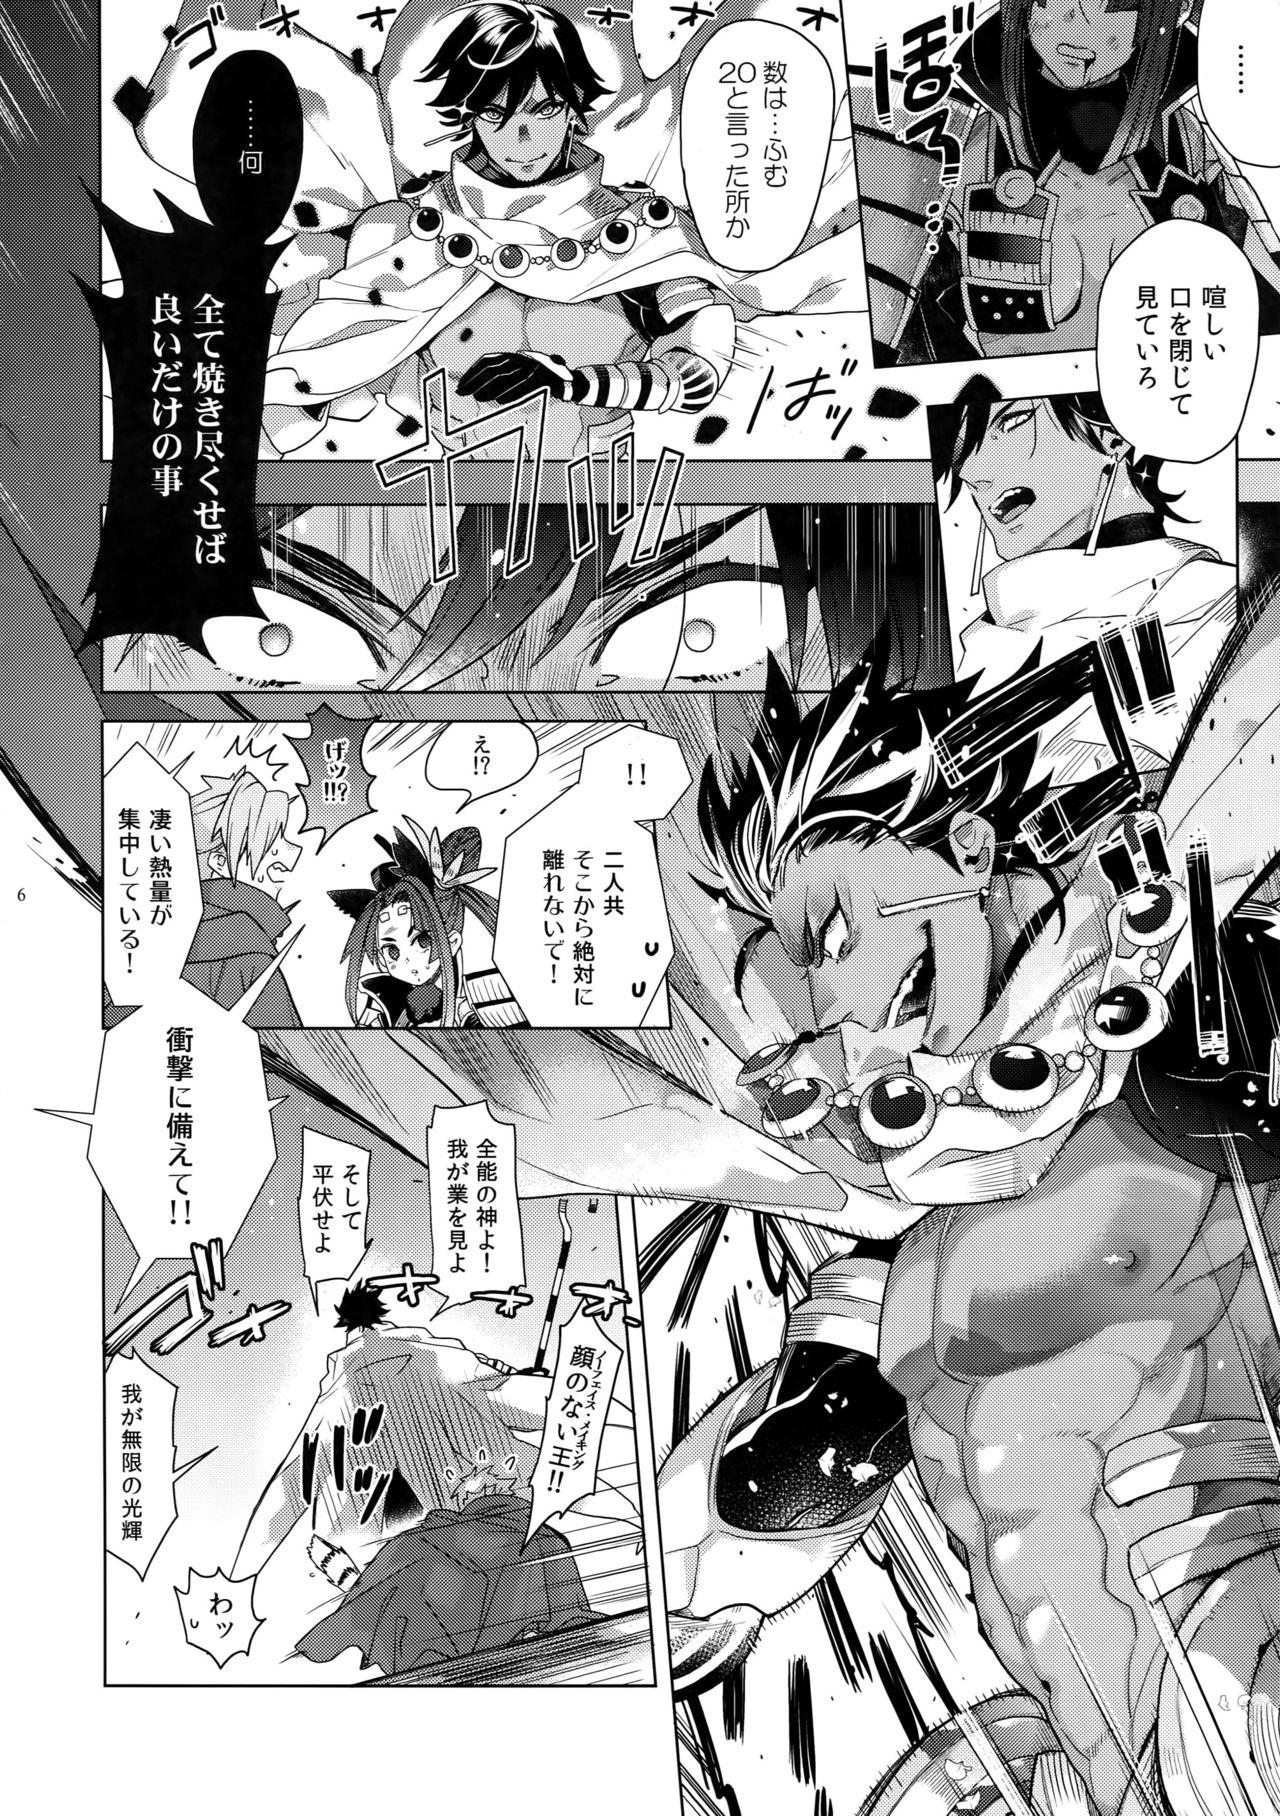 19yo Giruoji Sairoku-shuu 「gayo Re」 - Fate grand order Black Cock - Page 7